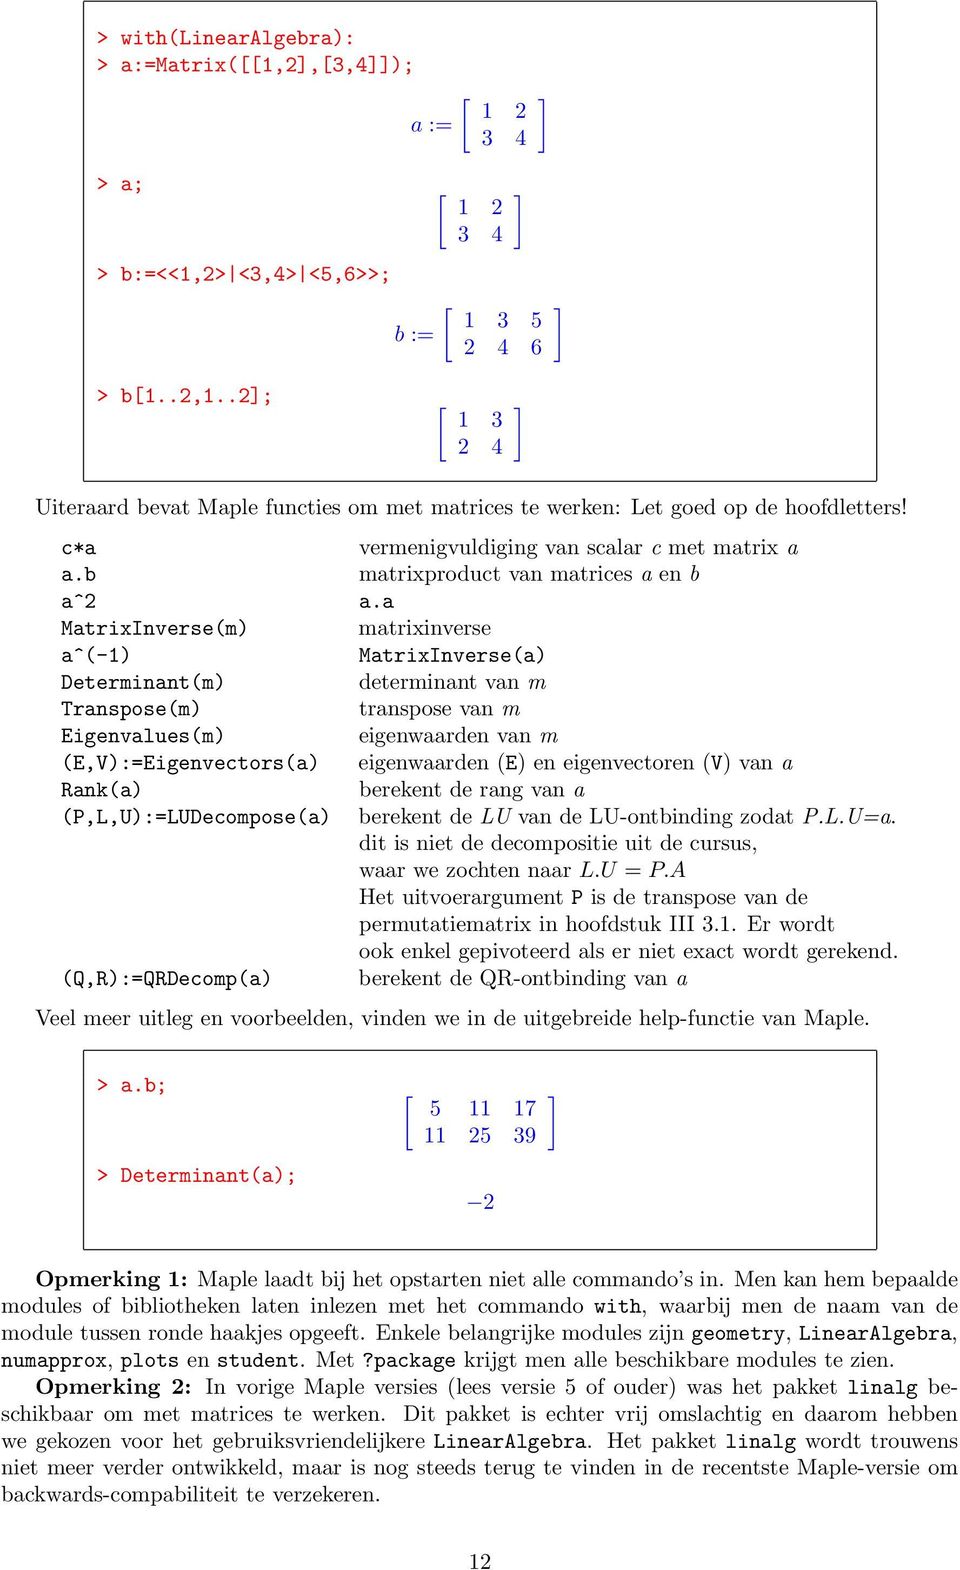 b a^2 MatrixInverse(m) a^(-1) Determinant(m) Transpose(m) Eigenvalues(m) (E,V):=Eigenvectors(a) Rank(a) (P,L,U):=LUDecompose(a) (Q,R):=QRDecomp(a) ] ] vermenigvuldiging van scalar c met matrix a